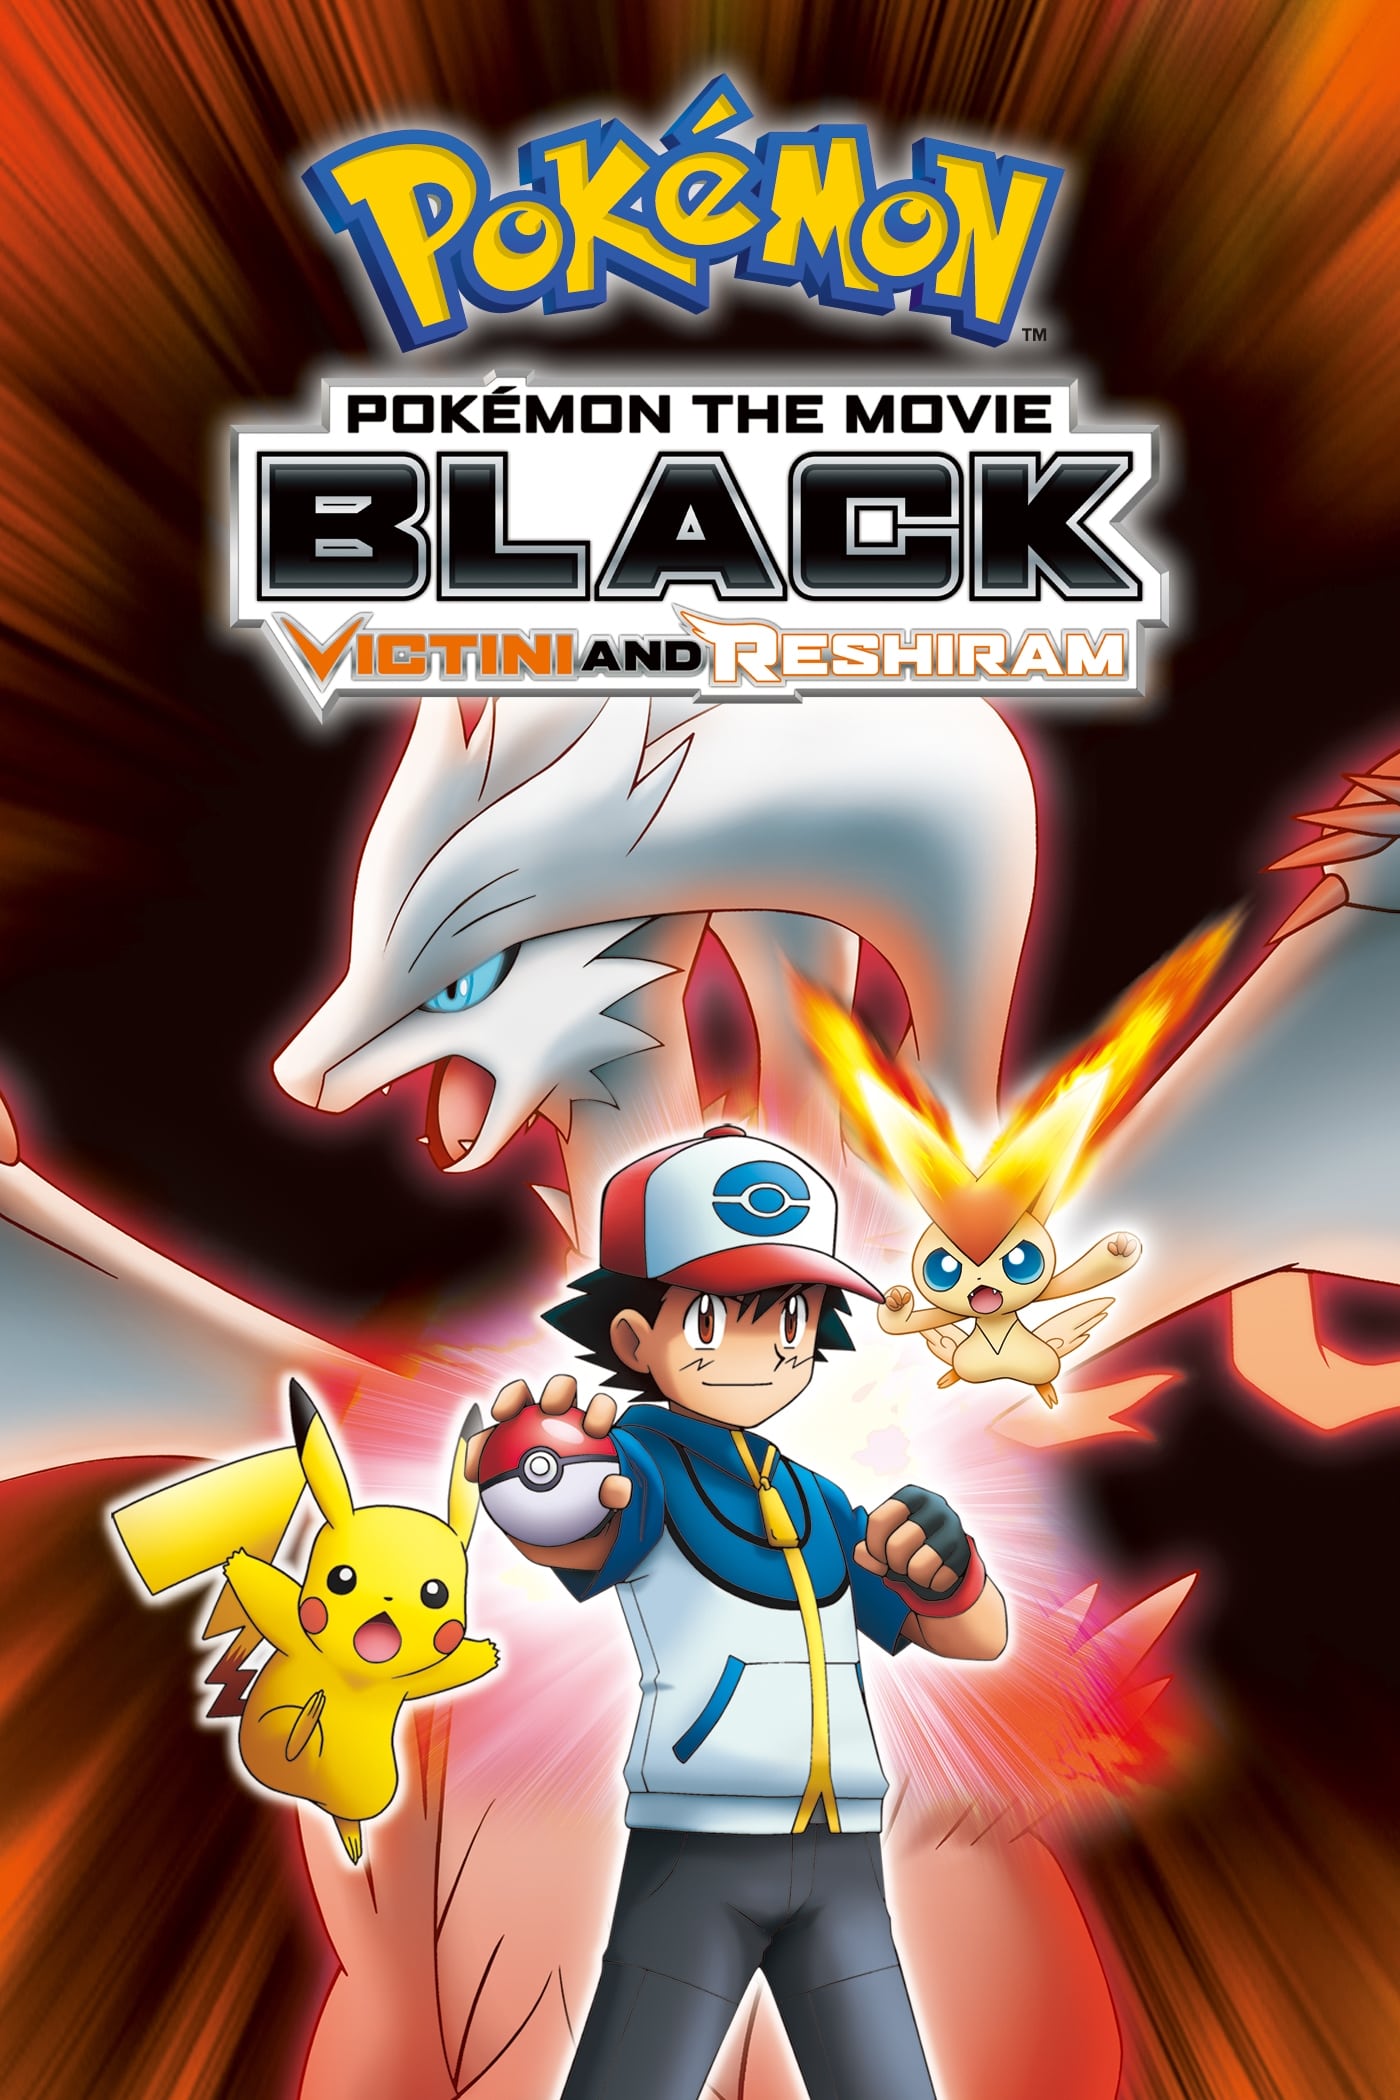 Pokémon 14: Schwarz - Victini und Reshiram (2011)